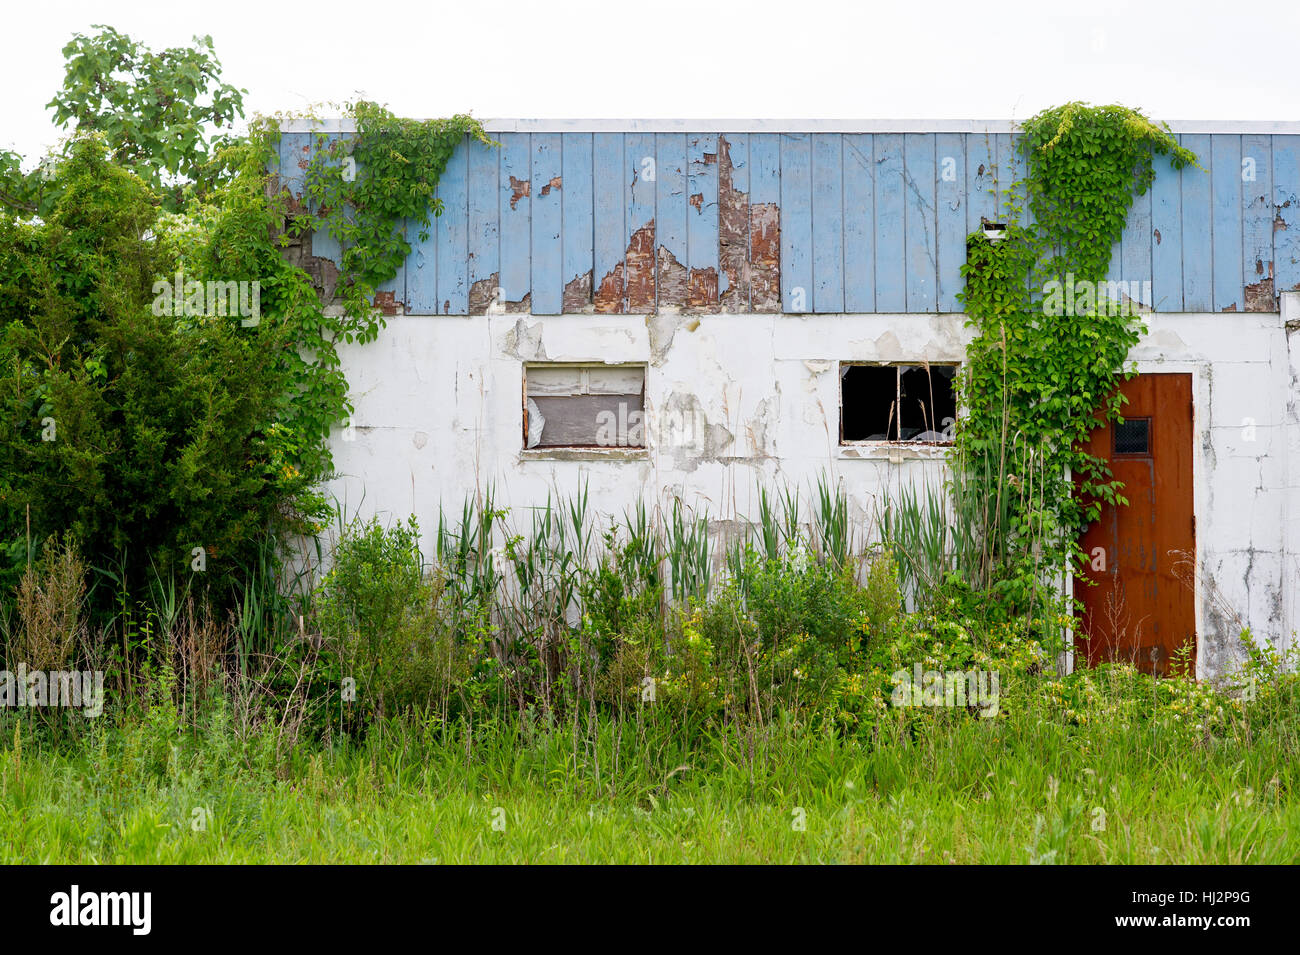 Ein verlassenes Gebäude mit einer rostigen Tür und grüne Reben, die auf ihm wachsen. Stockfoto